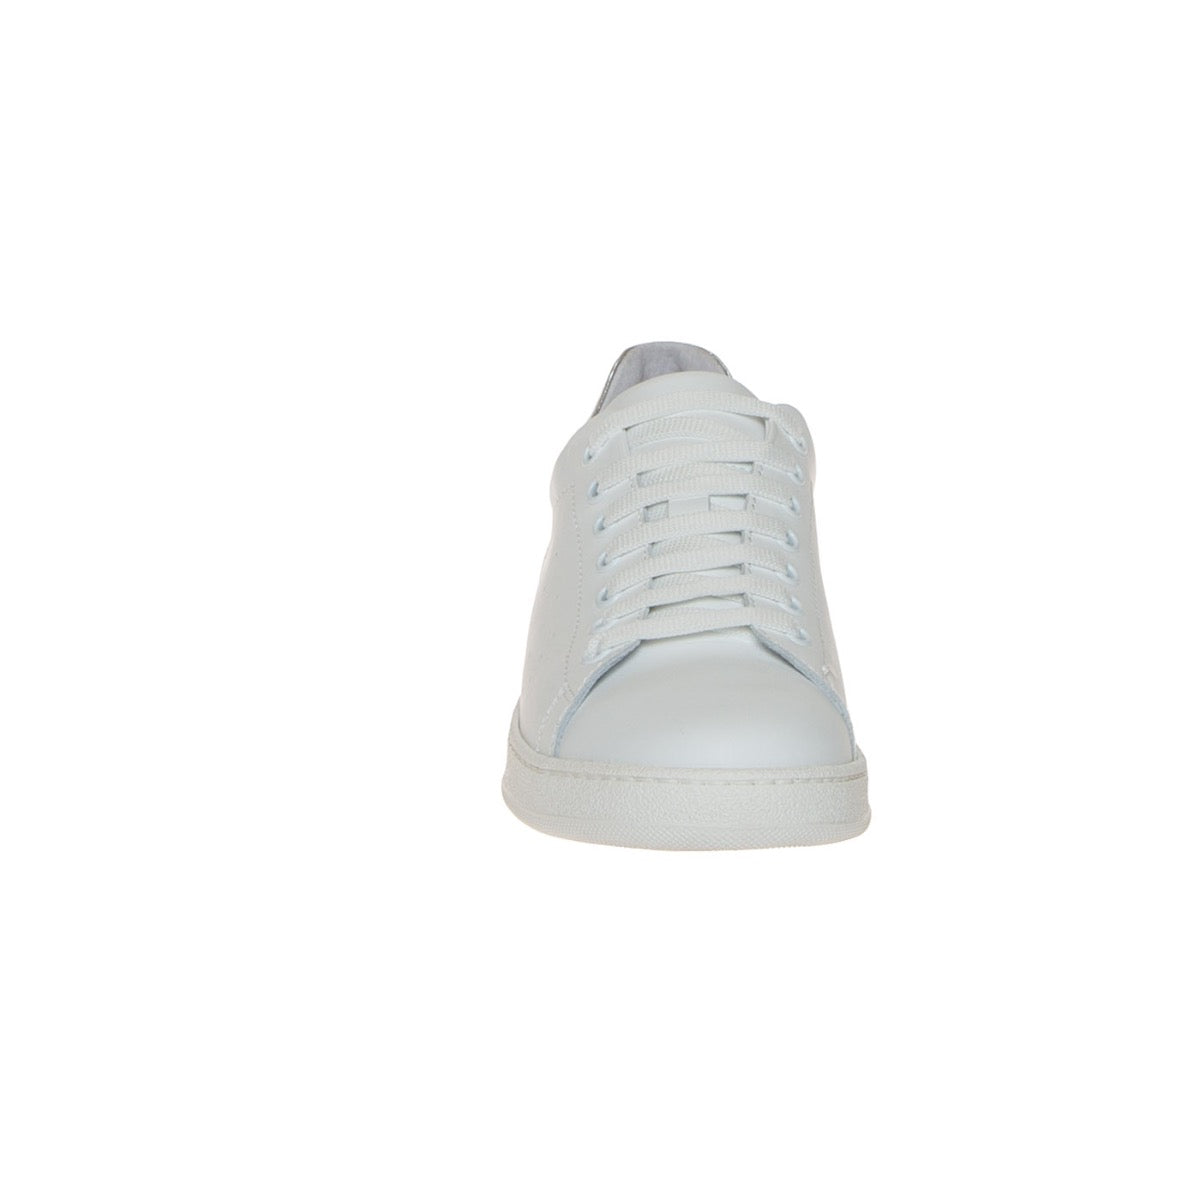 tyko-8914l-sneaker-pelle-bianco-argento